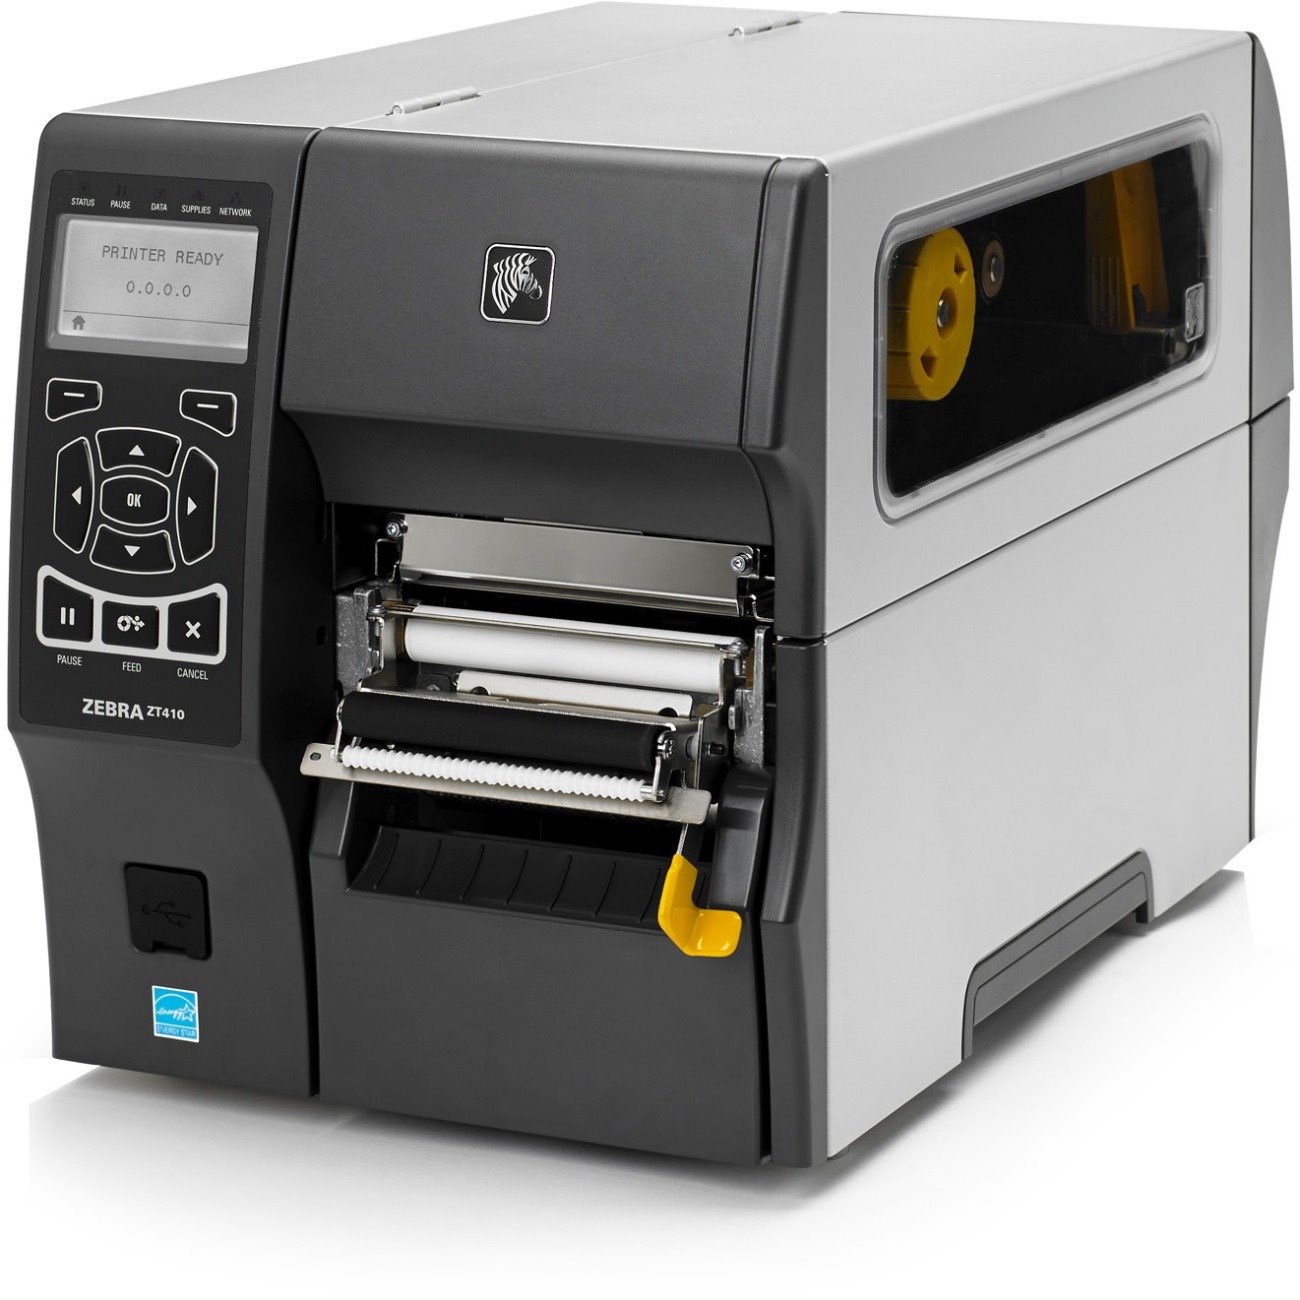 zebra zt410 printer